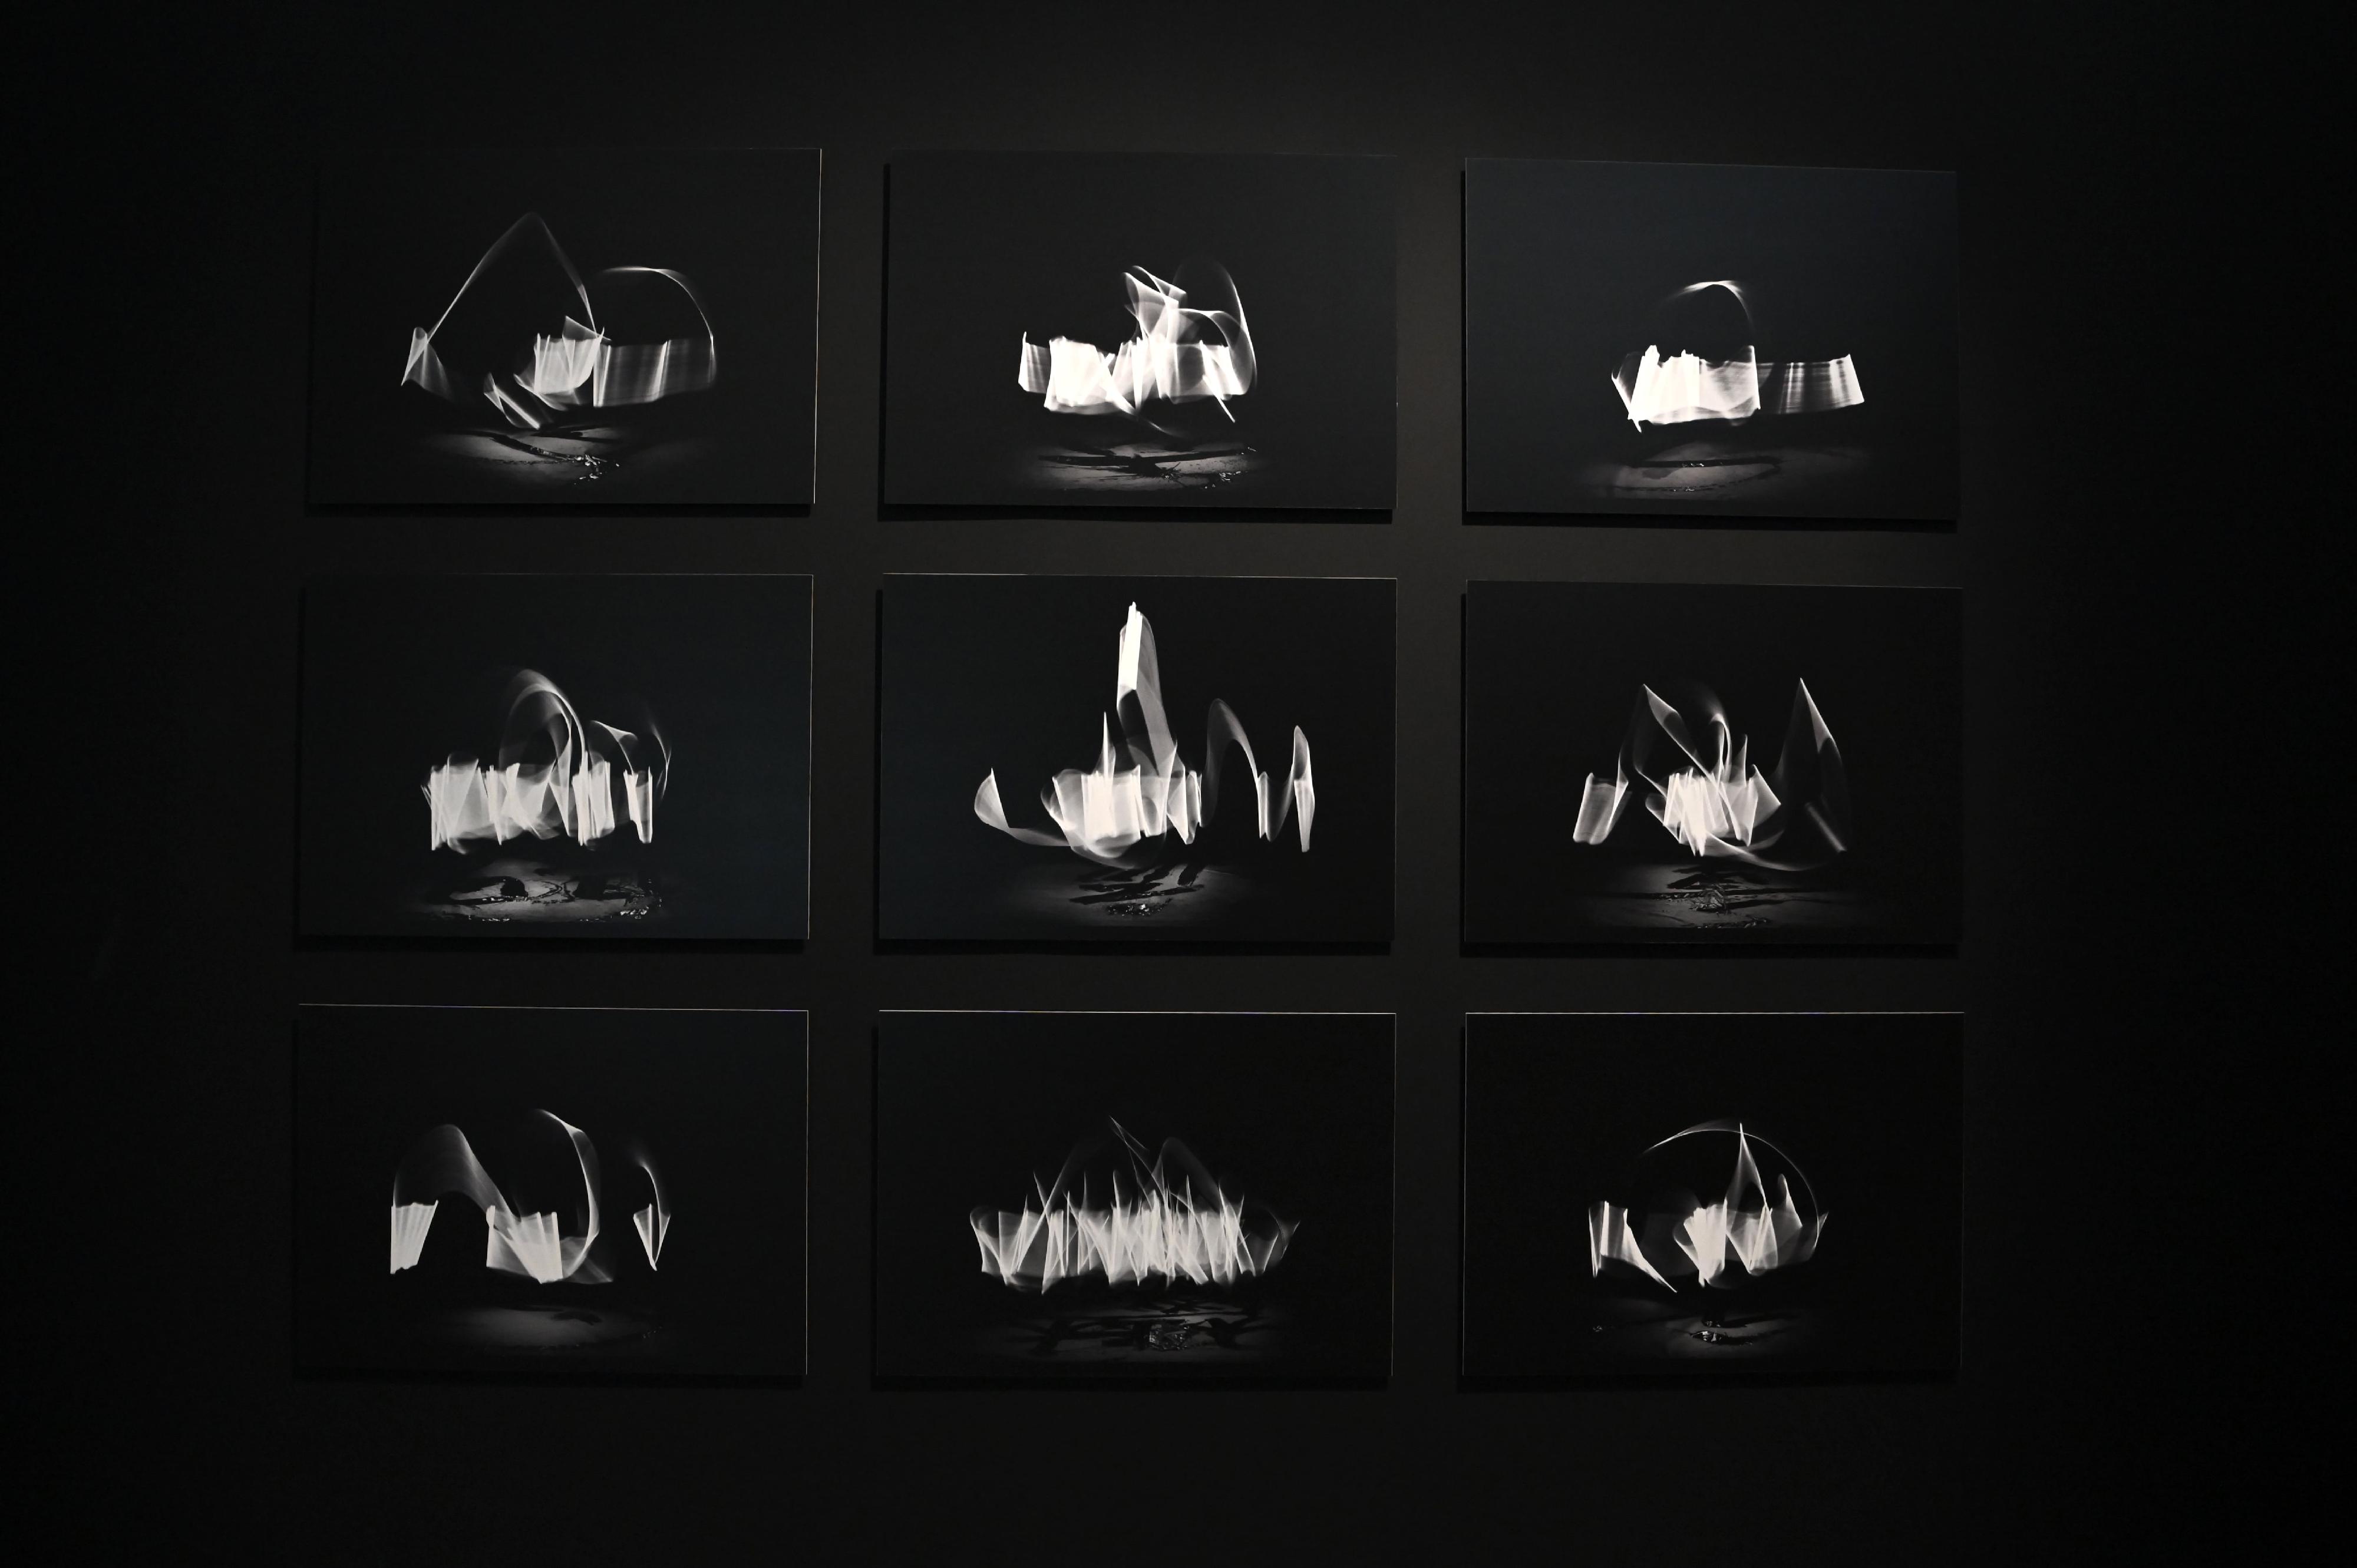 「字由人──漢字創意集」展覽明日（九月九日）起在香港藝術館舉行。圖示日本藝術家川尾朋子和池田航成的數碼錄像及攝影作品《Traces》。